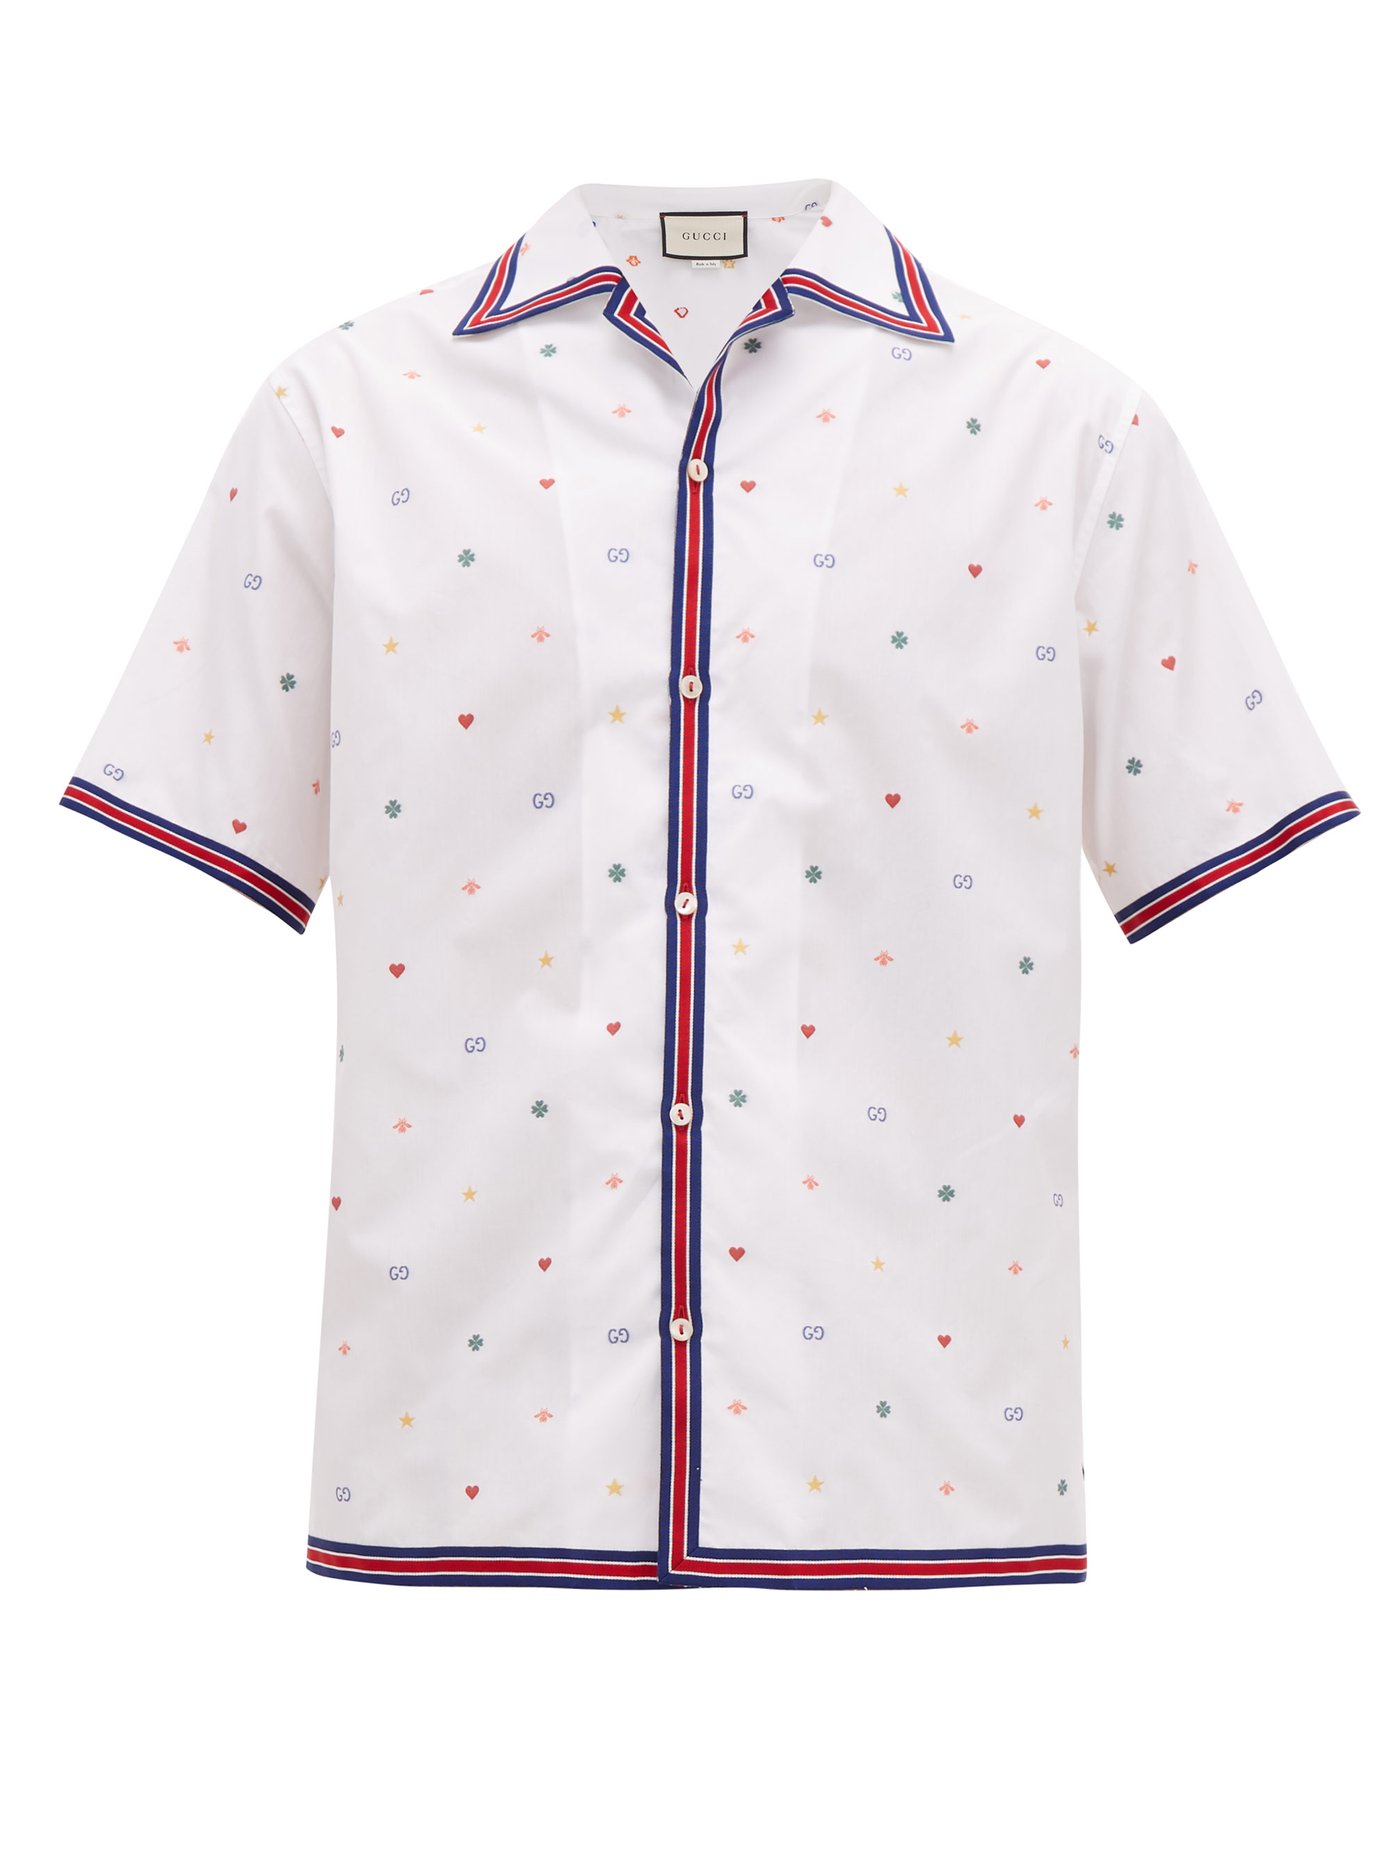 gucci shirt pattern